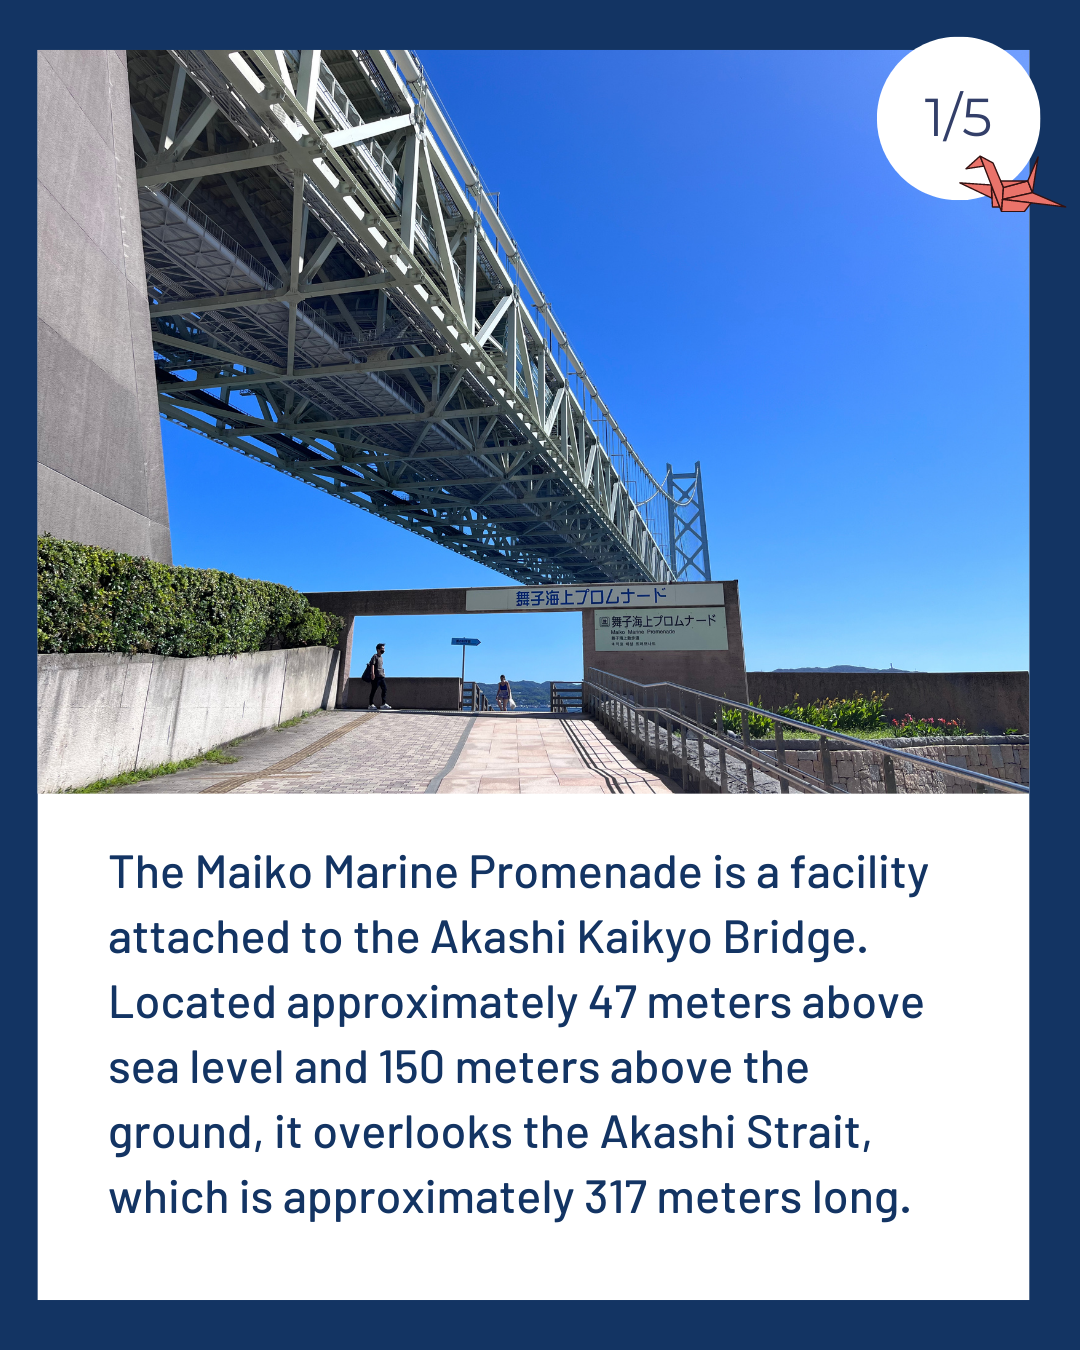 Maiko Marine Promenade